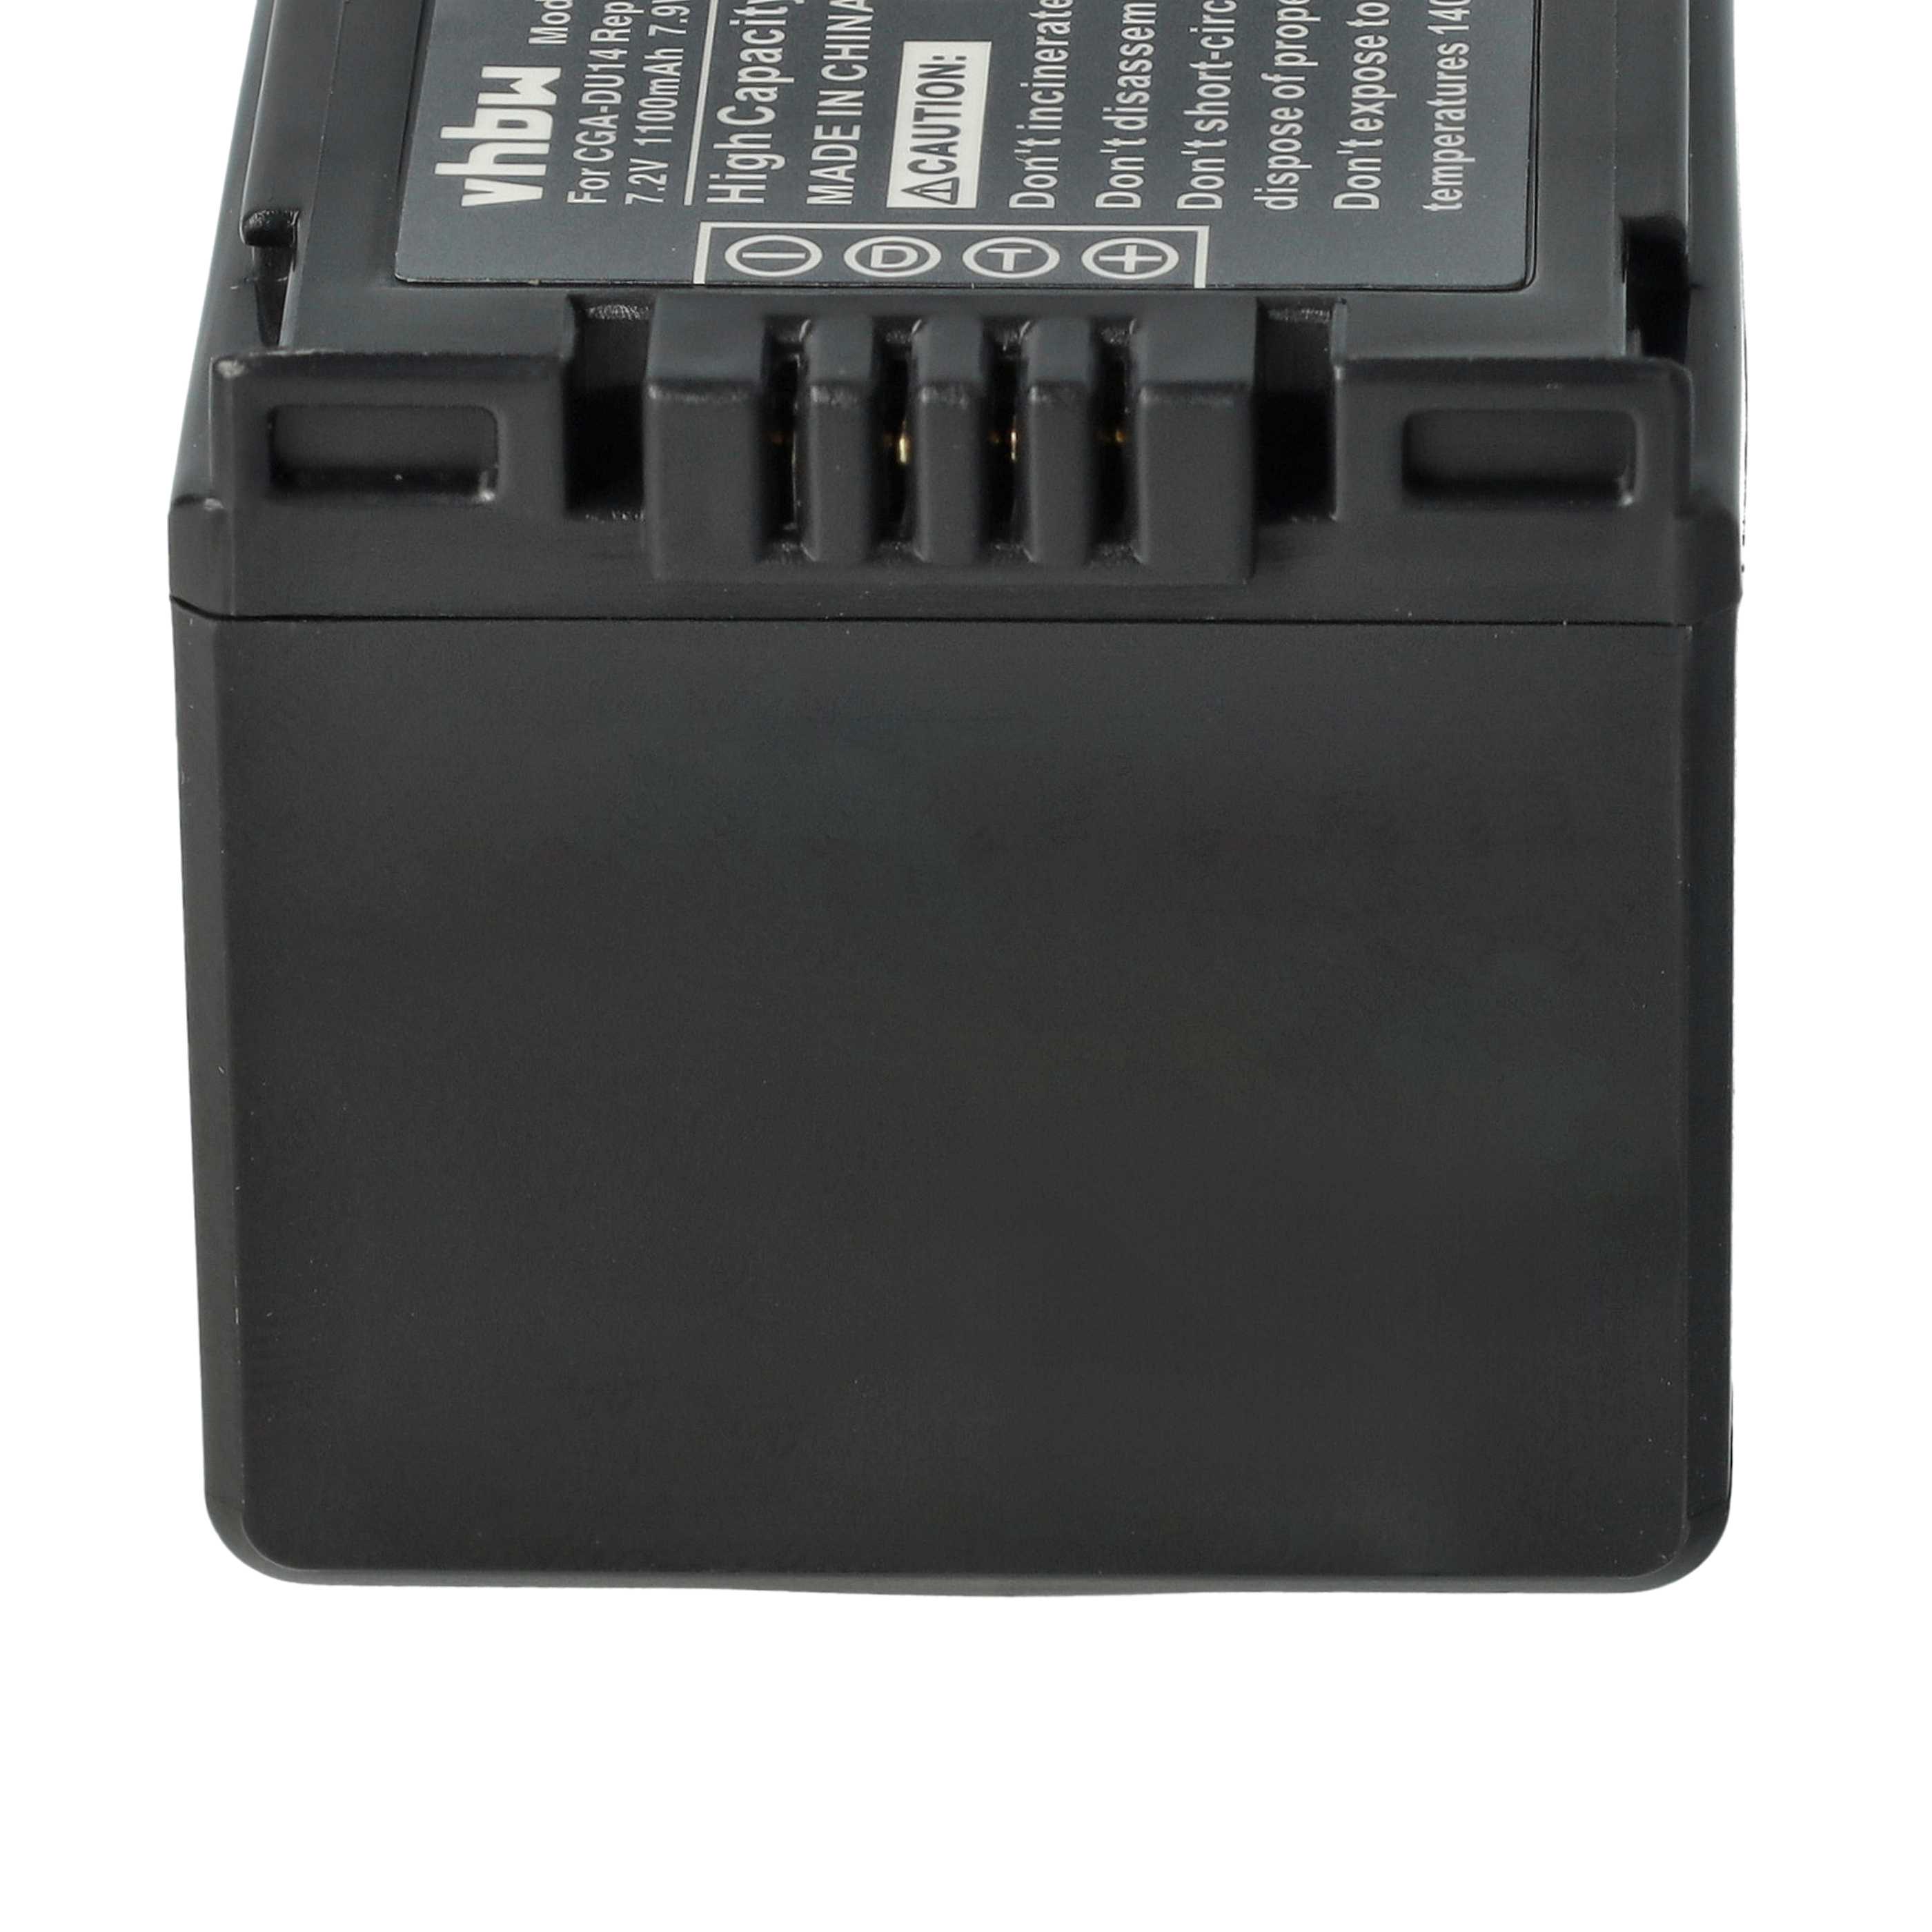 Batteria sostituisce Hitachi DZ-BP14s, DZ-BP07s, DZ-BP21s per fotocamera Hitachi - 1100mAh 7,2V Li-Ion